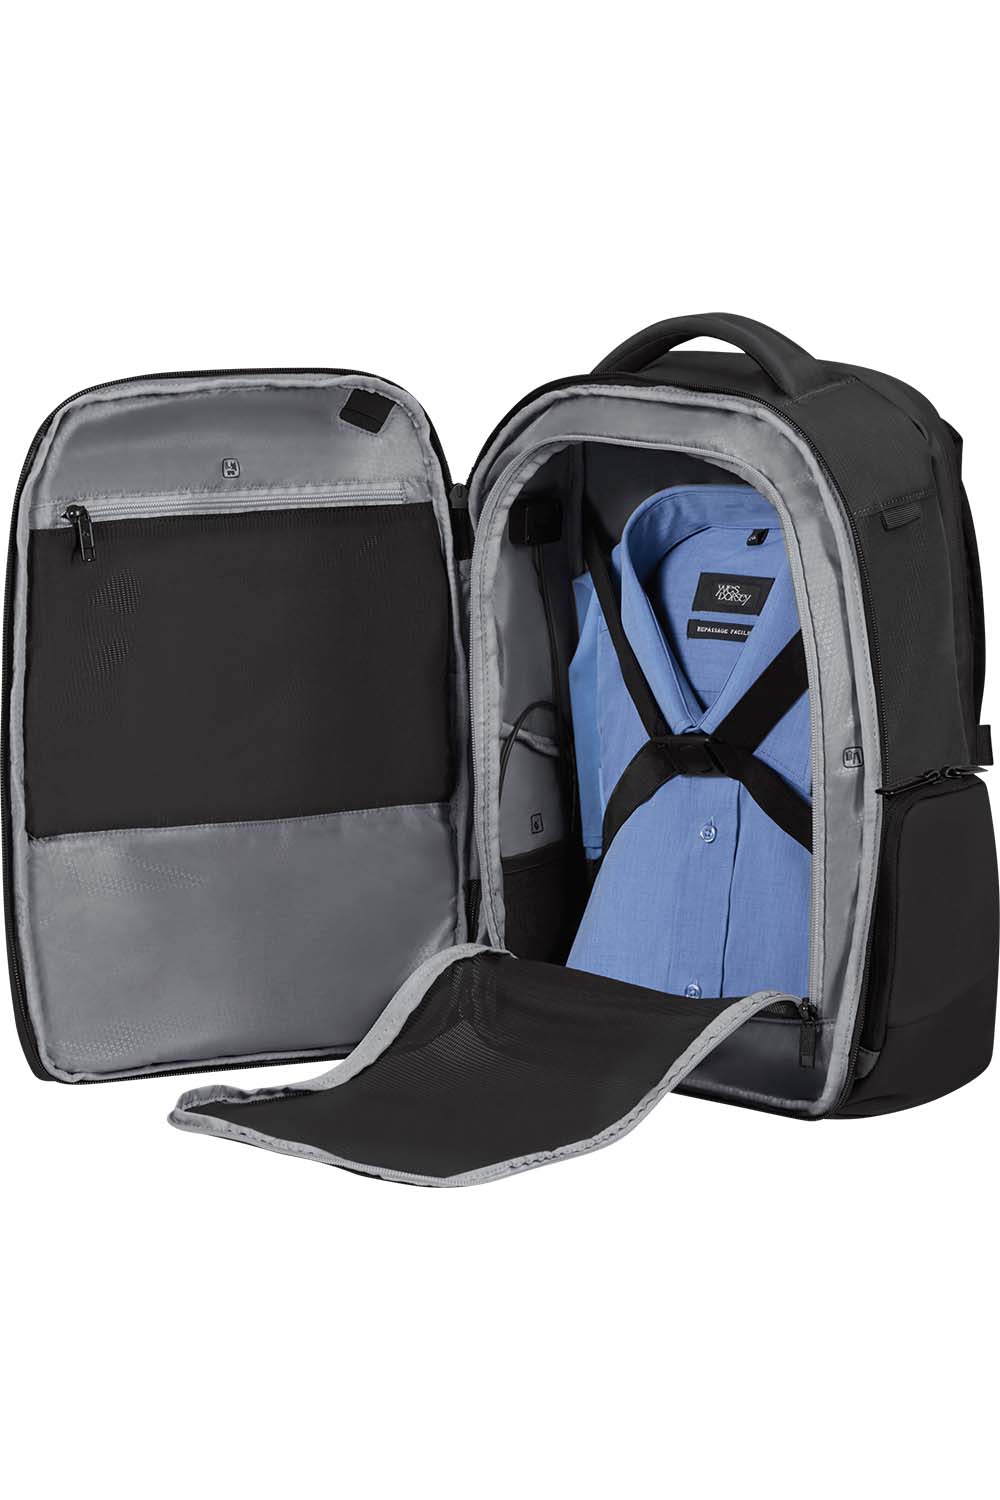 Samsonite Biz2go Backpack daytrip תיק גב למחשב נייד ולנסיעות 15.6"